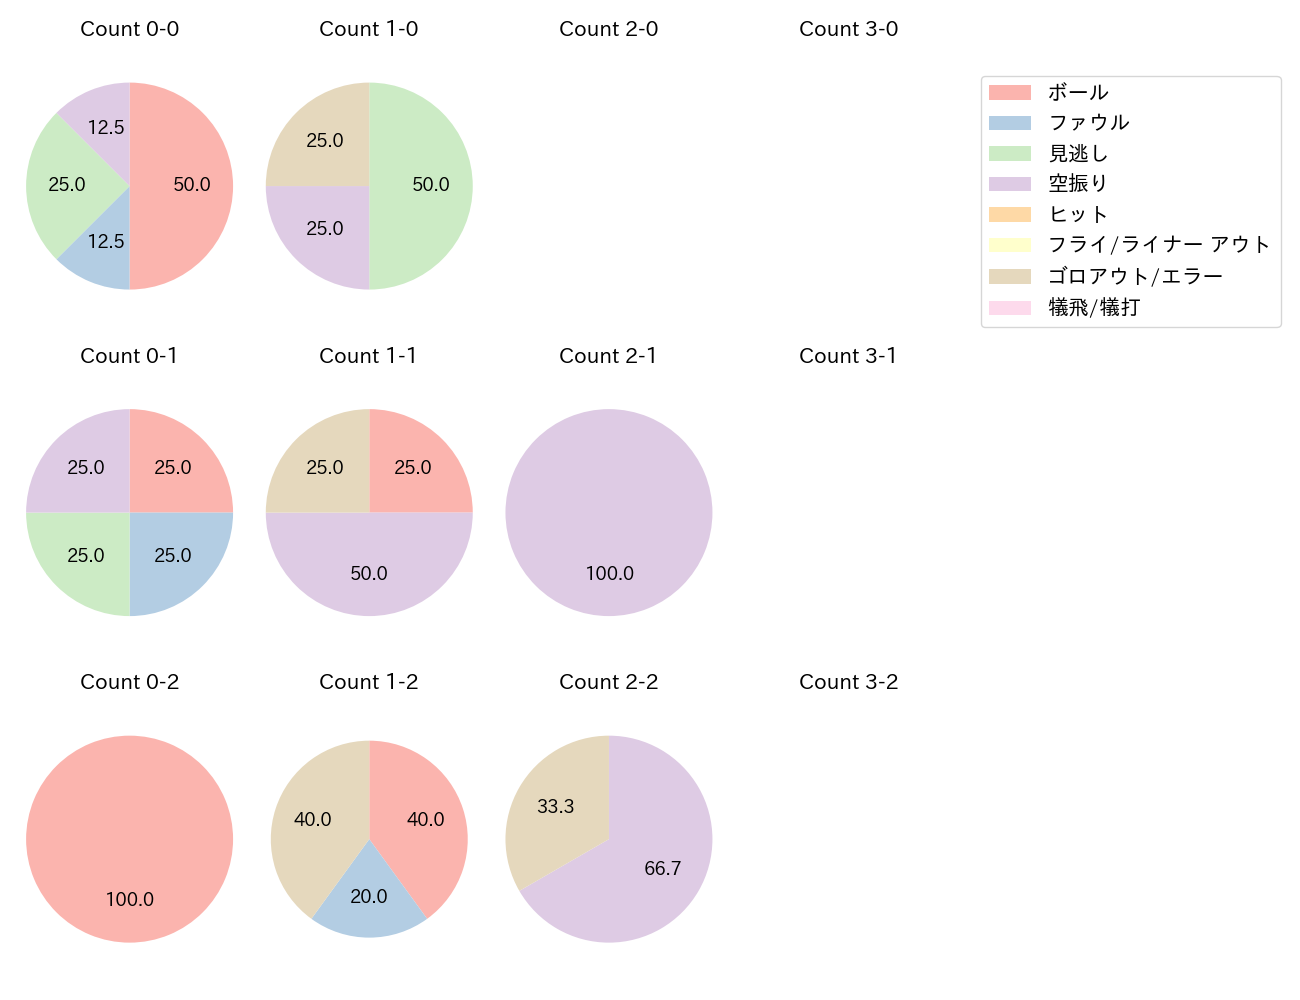 細川 成也の球数分布(2021年4月)